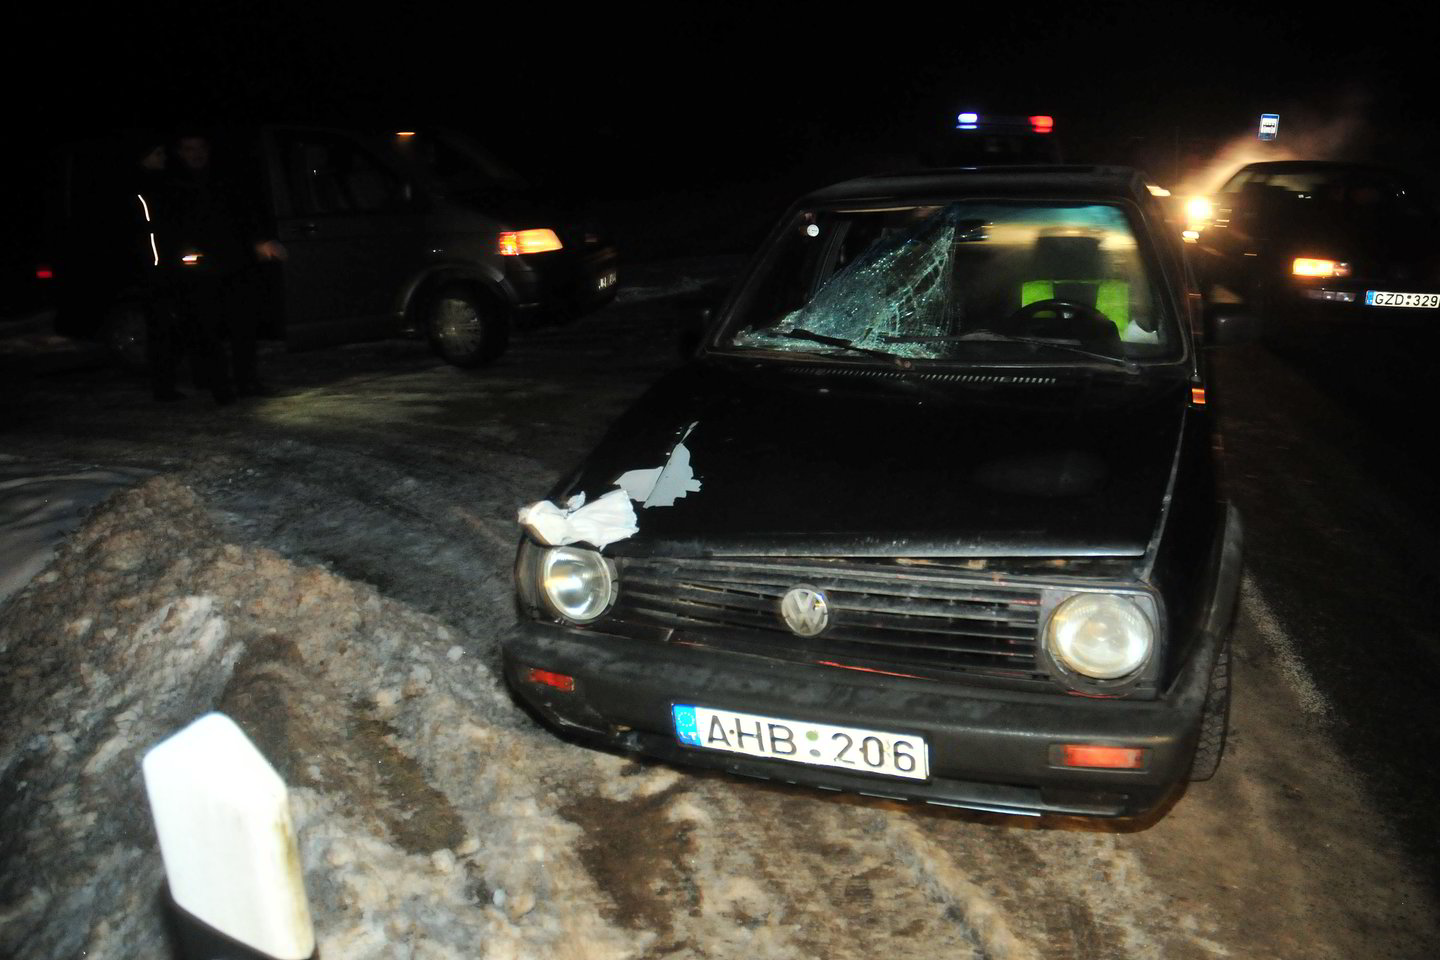  Vilniaus r. automobilis suvažinėjo moterį, ją partrenkęs girtas vairuotojas sulaikytas.<br> A.Vaitkevičiaus nuotr.